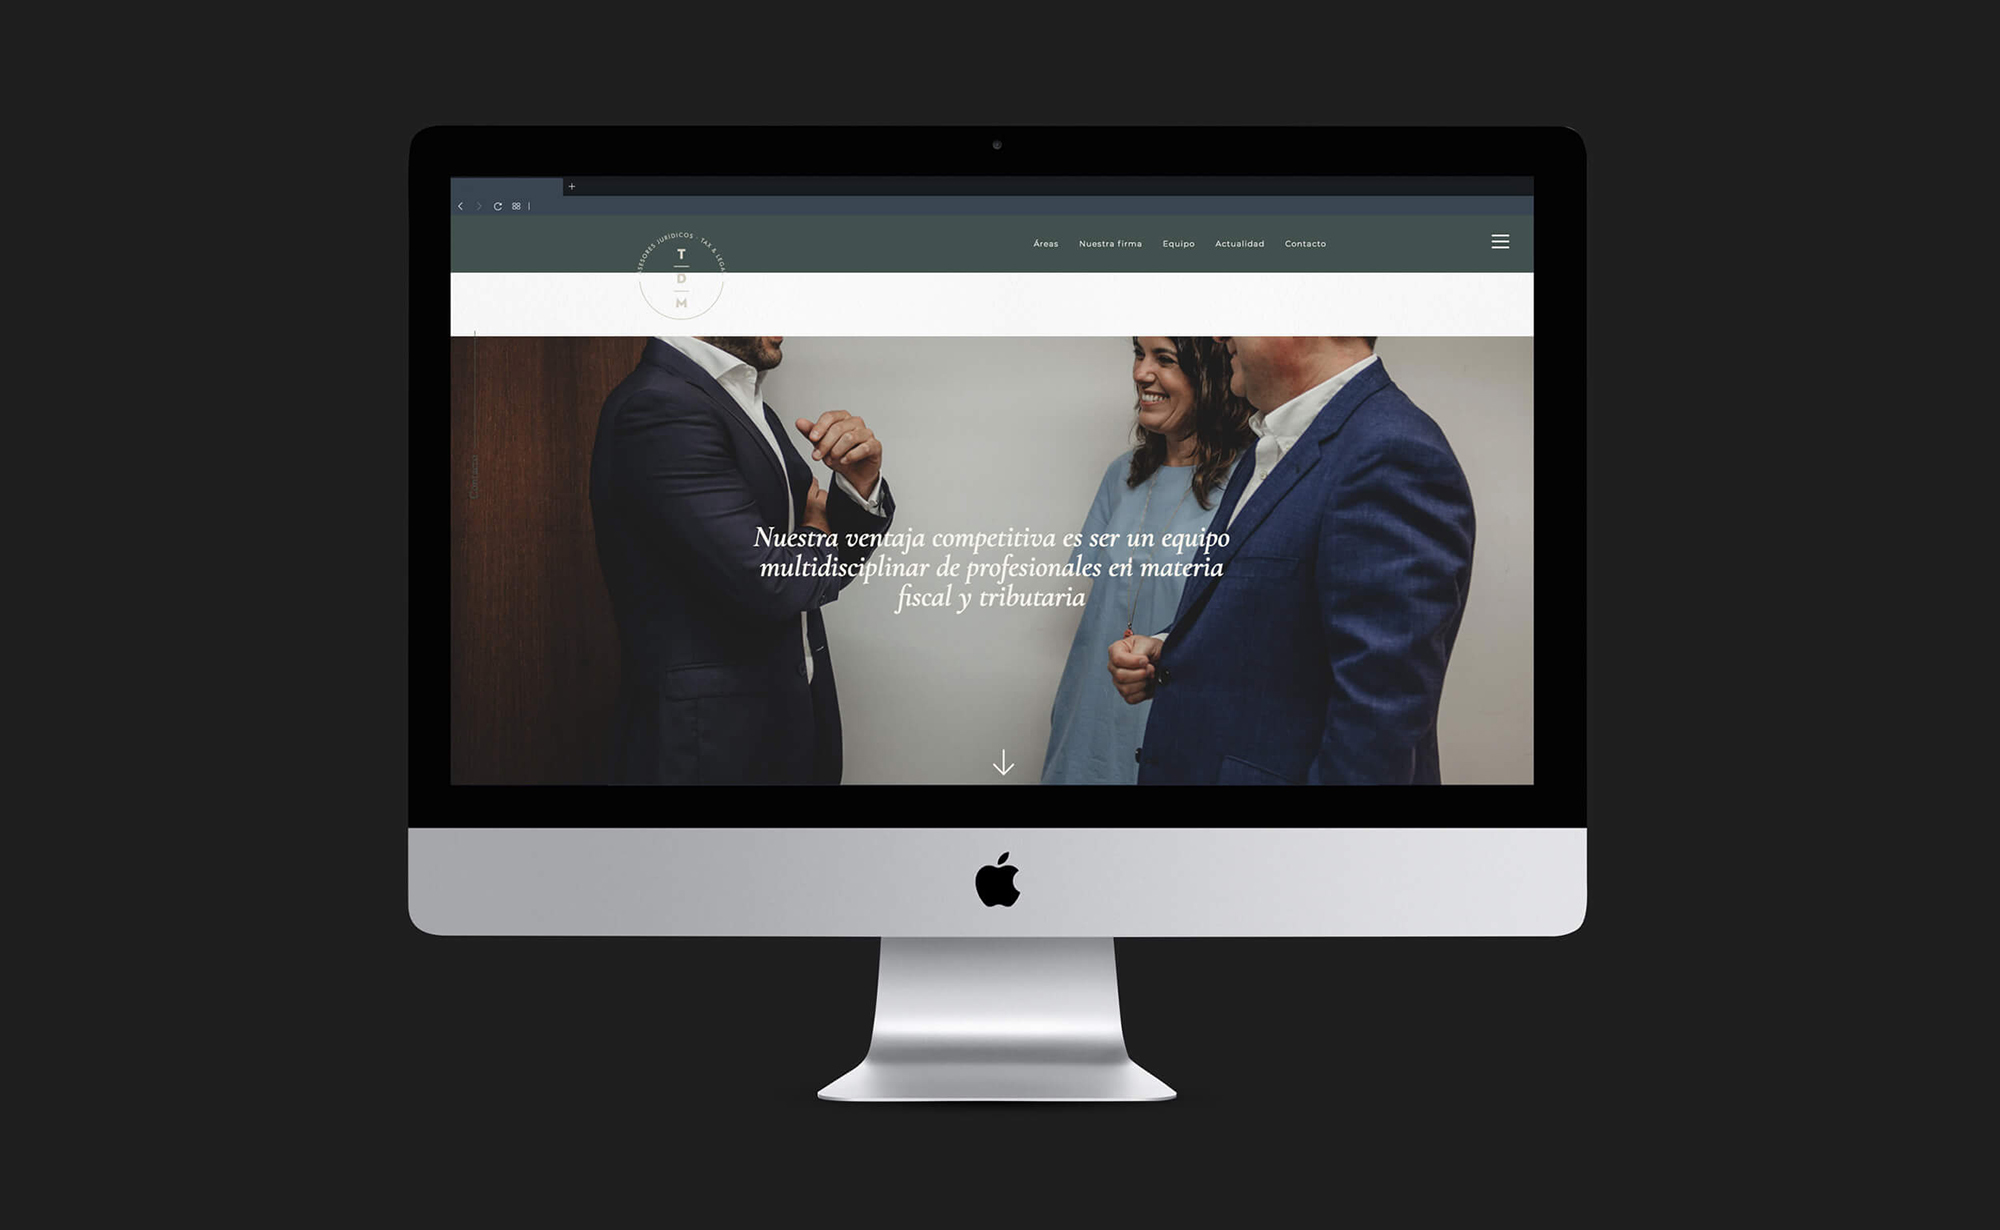 Diseño y desarrollo de website corporativo para TDM Asesores Jurídicos-Tax&Legal. Vista website iMac.